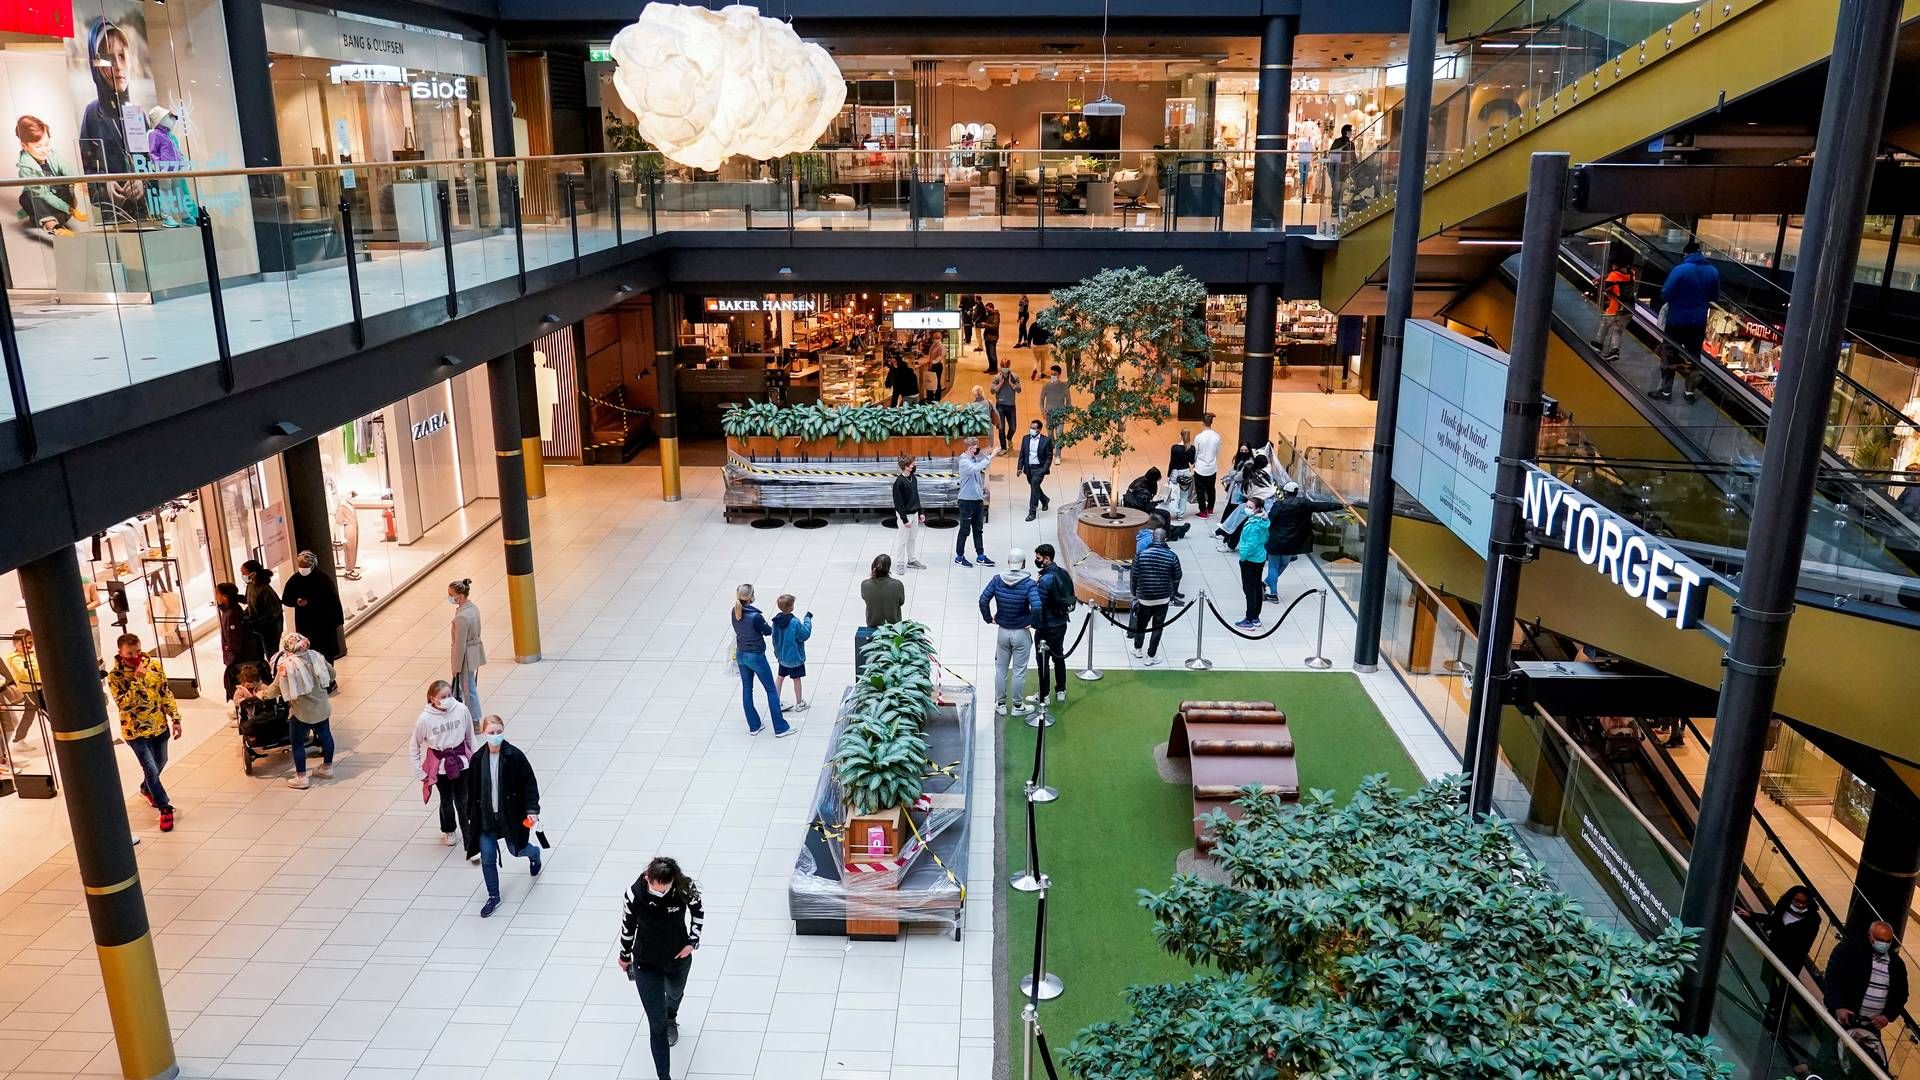 FYLLES OPP IGJEN: I det Sandvika storsenter og andre retail-eiendommer landet over igjen fylles opp, stiger forvetningene blant investorene. | Foto: Håkon Mosvold Larsen / NTB